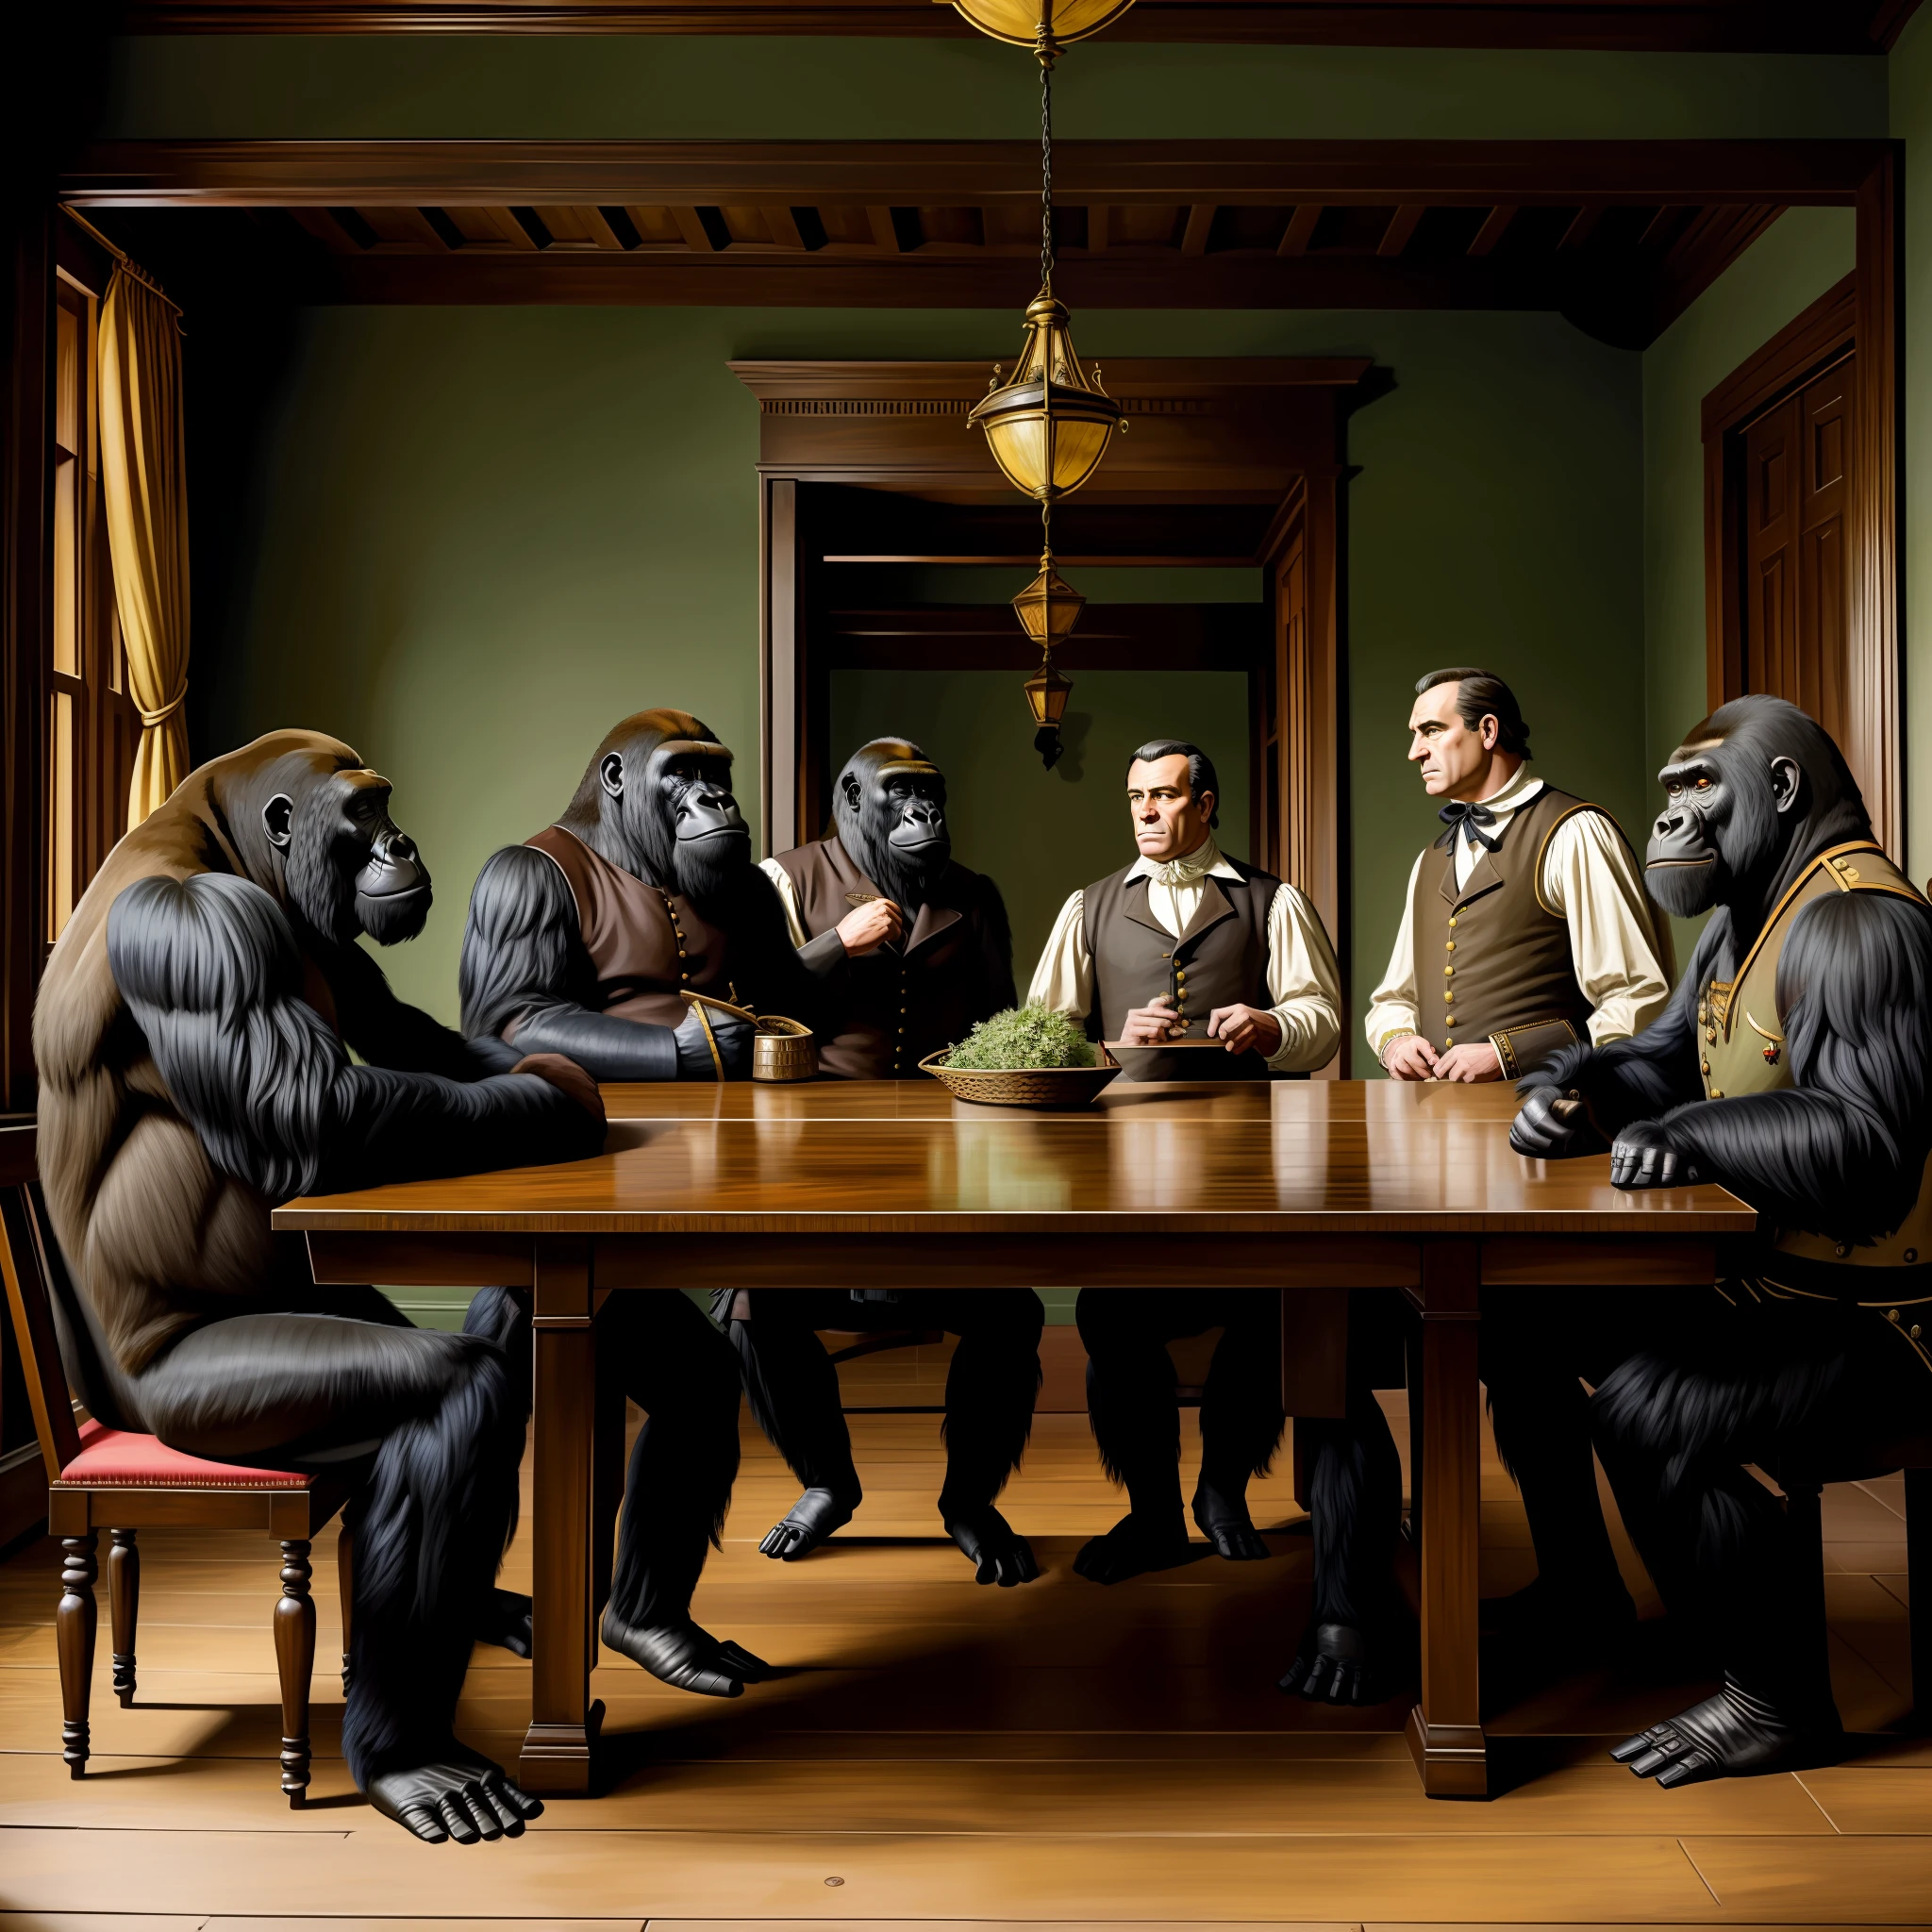 历史绘画, 全景拍摄, 在走廊, 大猩猩辩论, 大猩猩在争论, 穿着殖民时期服装的大猩猩, 对话, 殖民时代风格, 详细的服装, 严肃的面孔, 对话, 谈判 , 在餐桌上, 谈判 table, 穿着殖民地服装的大猩猩, 军事装备中的大猩猩